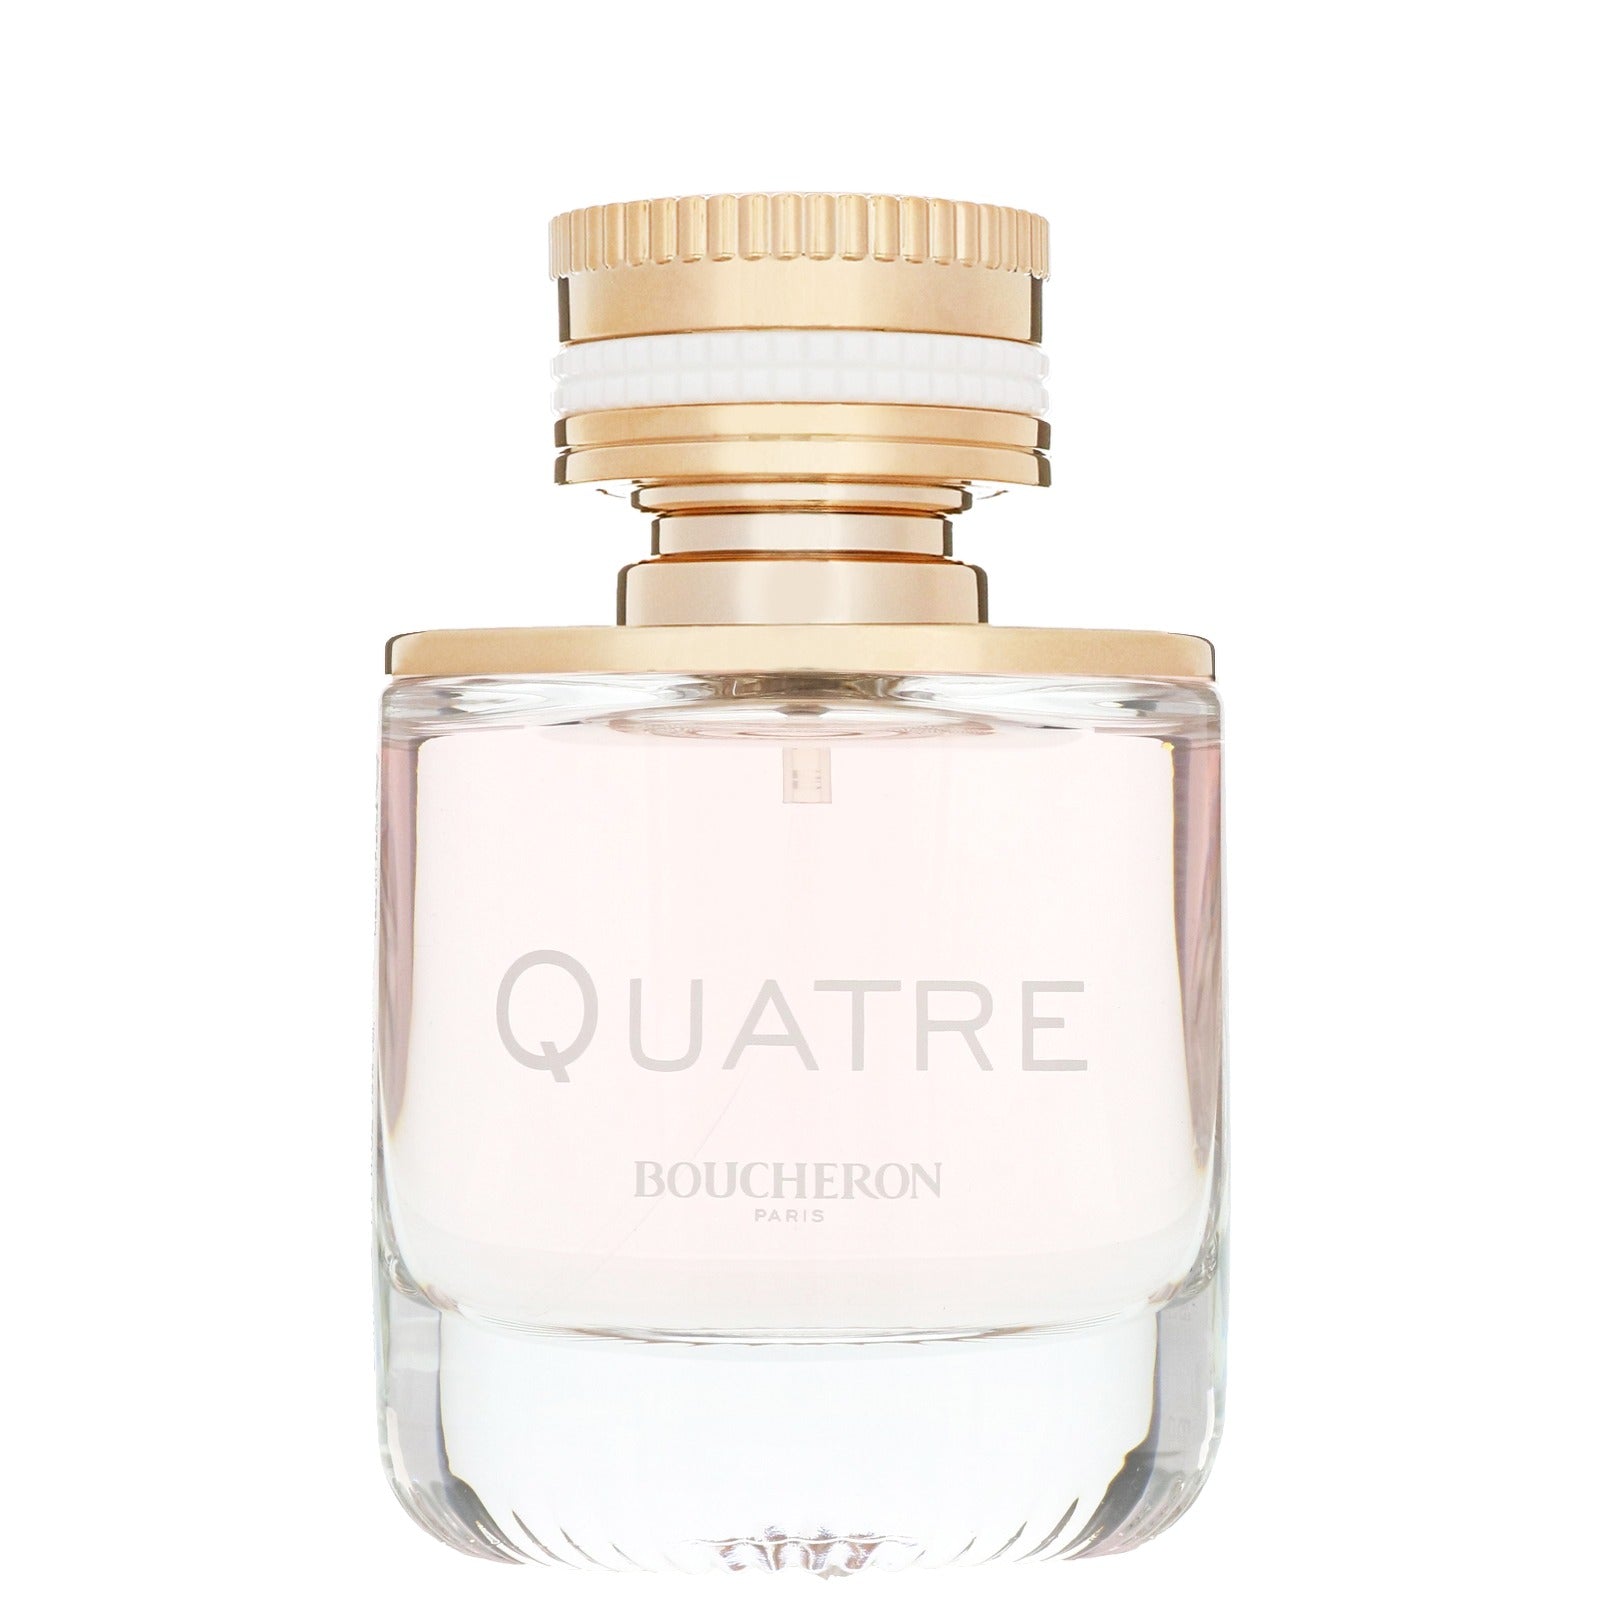 Boucheron Quatre Eau De Parfum Spray 50ml - Feel Gorgeous